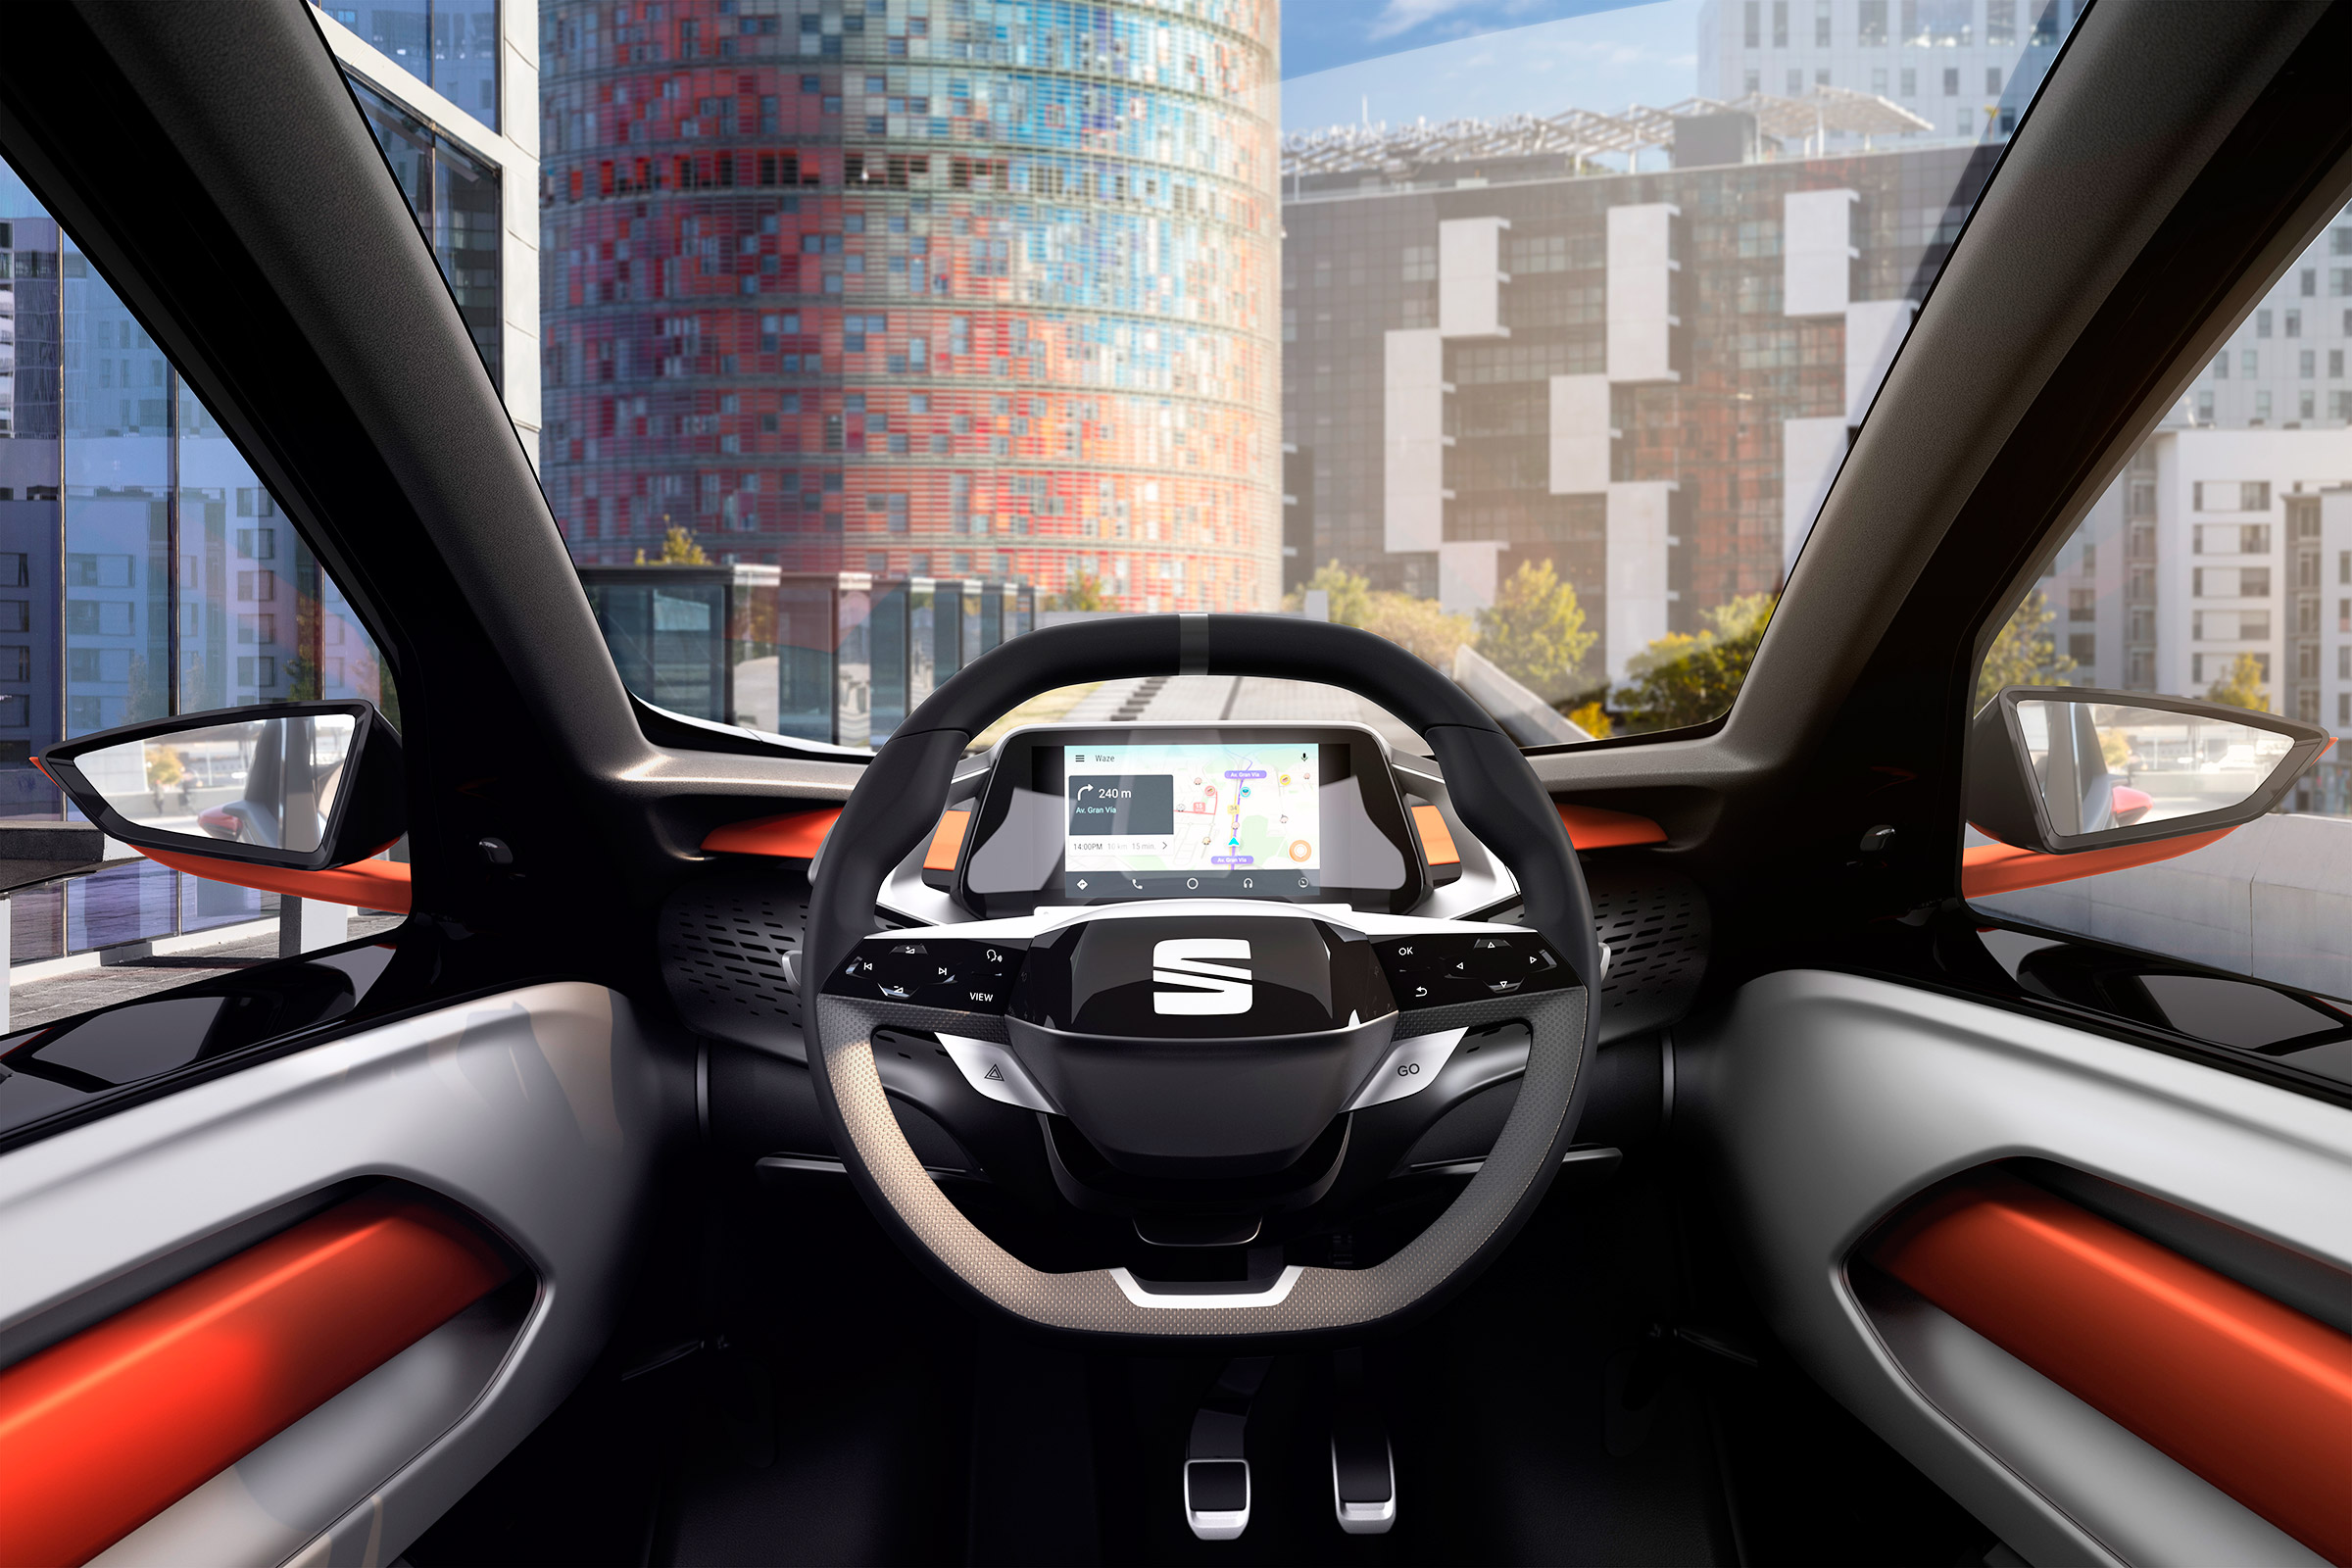 Debutta al MWC 2019 Seat Minimó, la micro car elettrica pensata per il car sharing 1